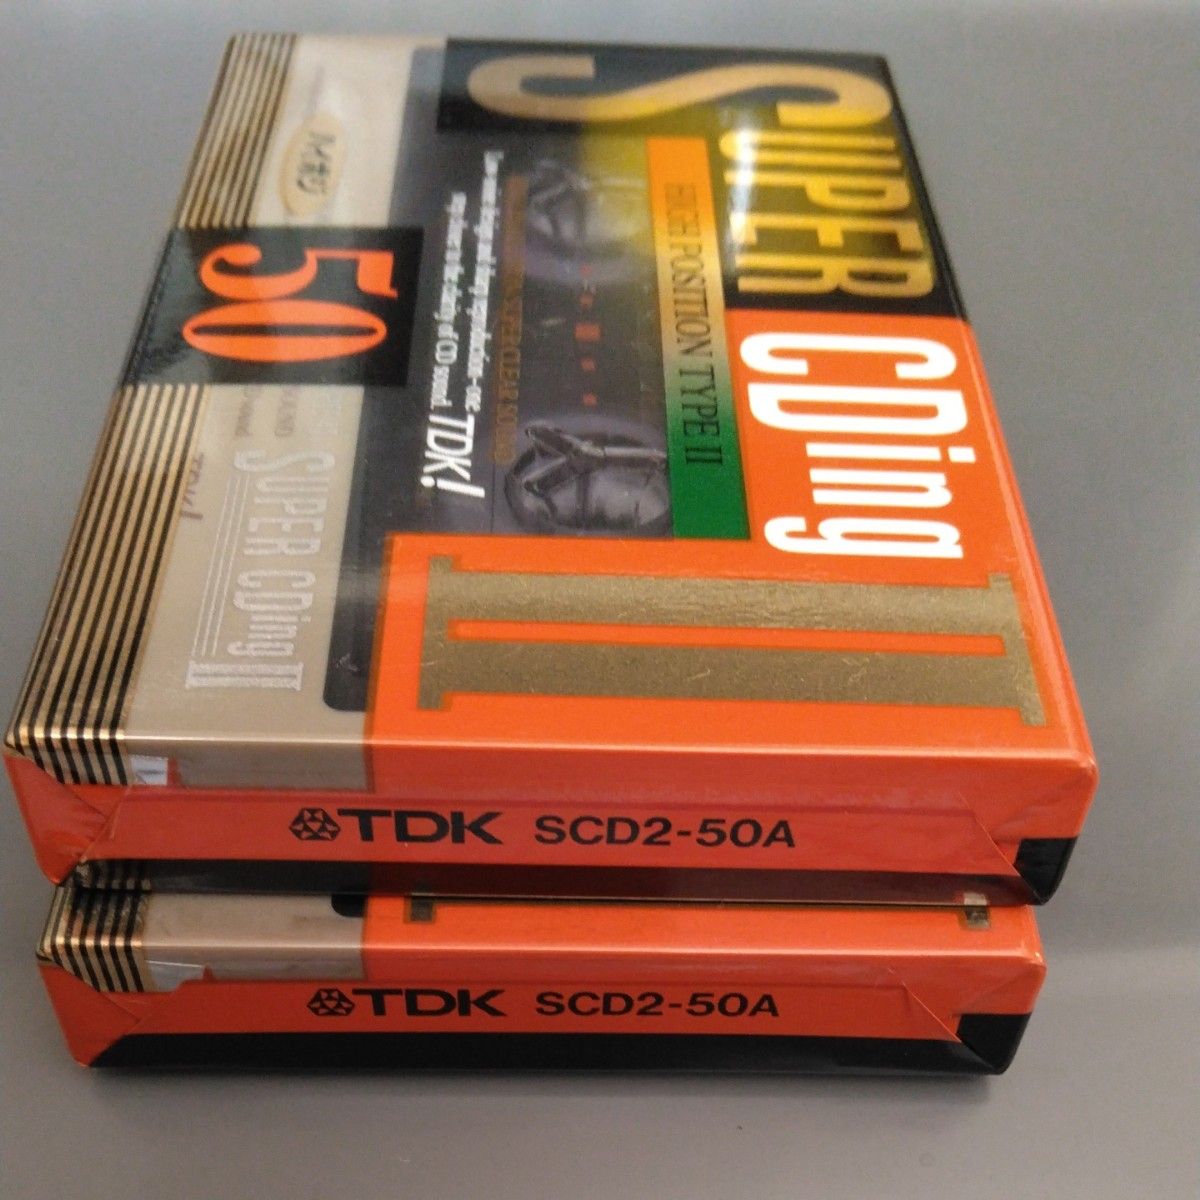 TDK カセットテープ SUPER CDing2 50 ハイポジ